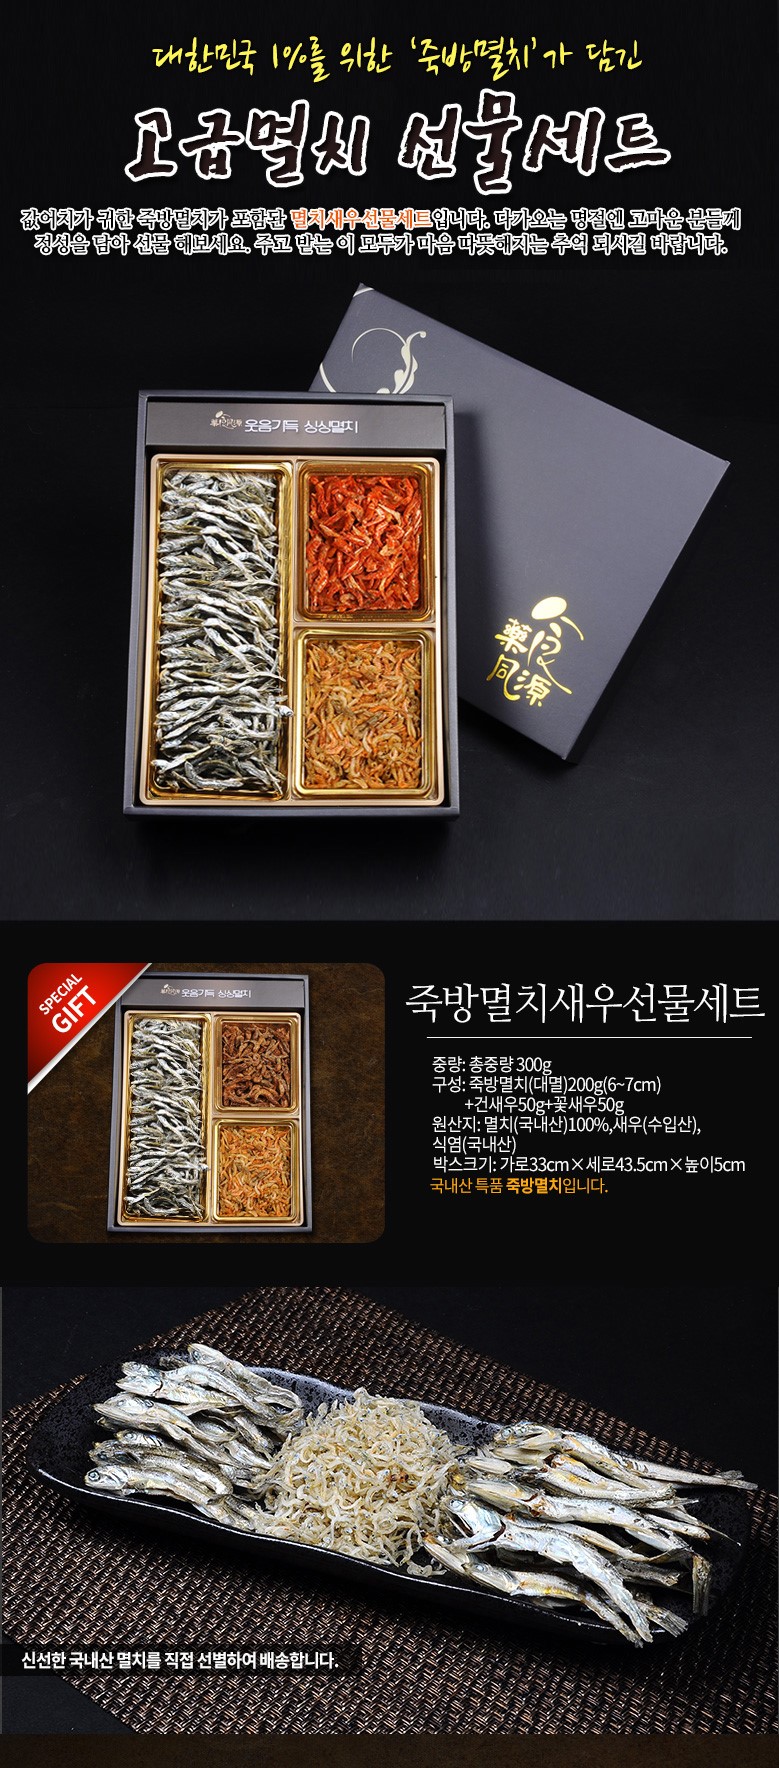 韓國食品-[이샵한정판매!] [누리원] 명절고급죽방멸치새우선물세트 300g